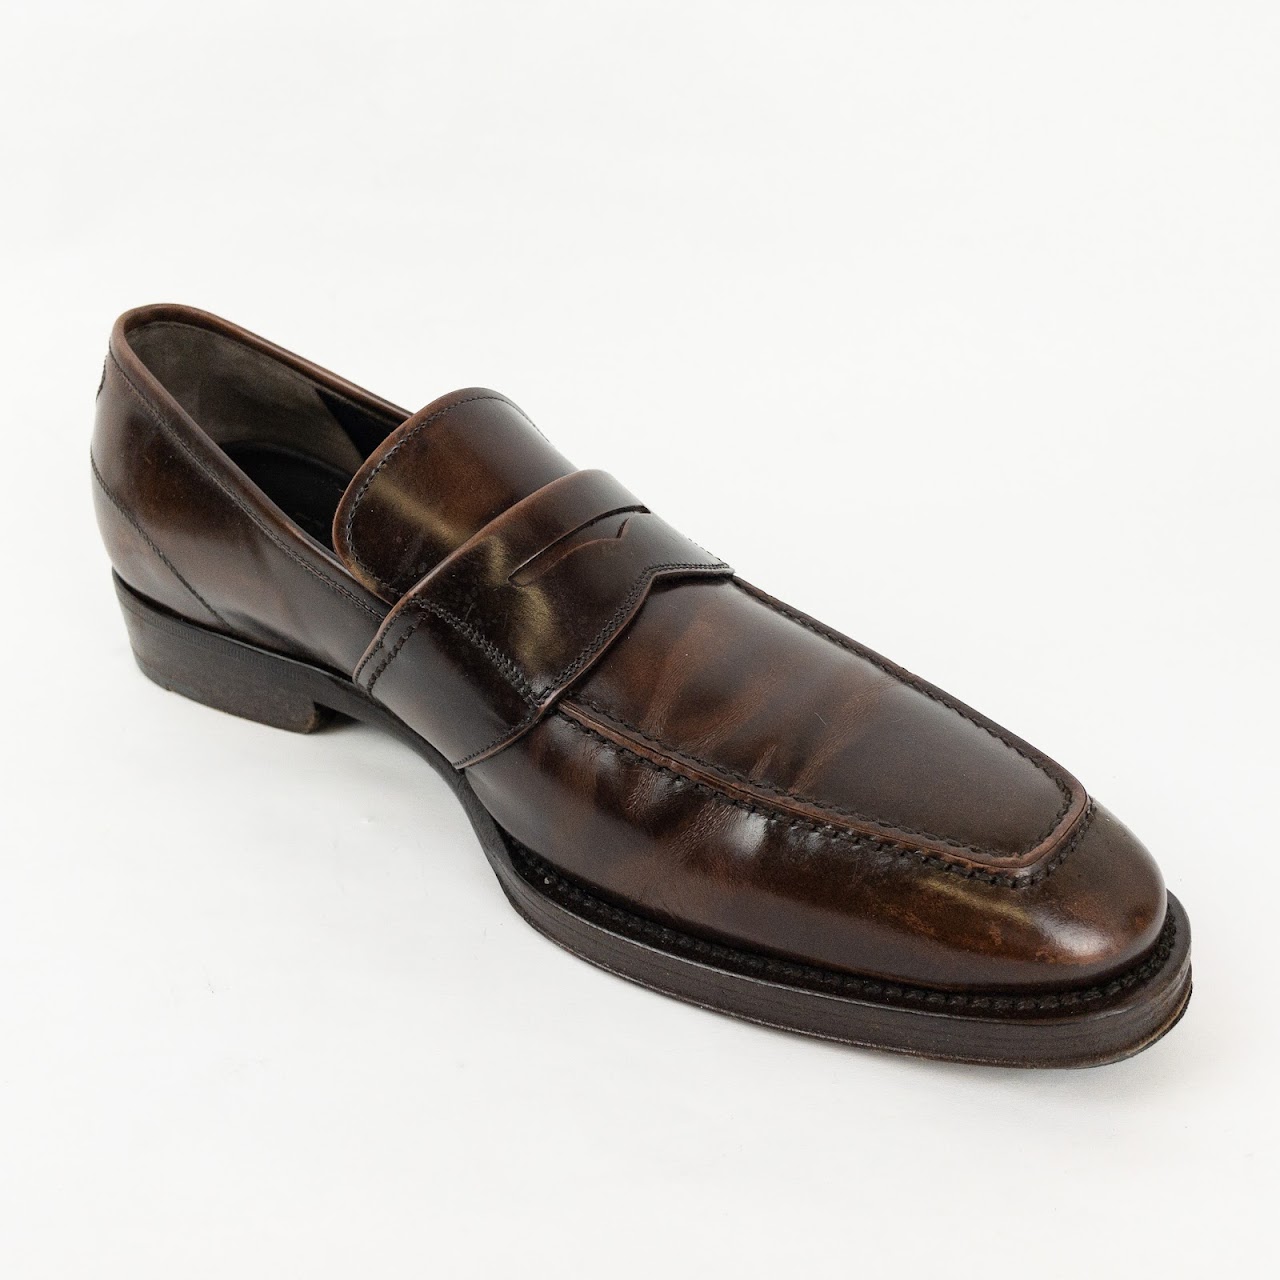 Salvatore Ferragamo Cognac Leather Loafers